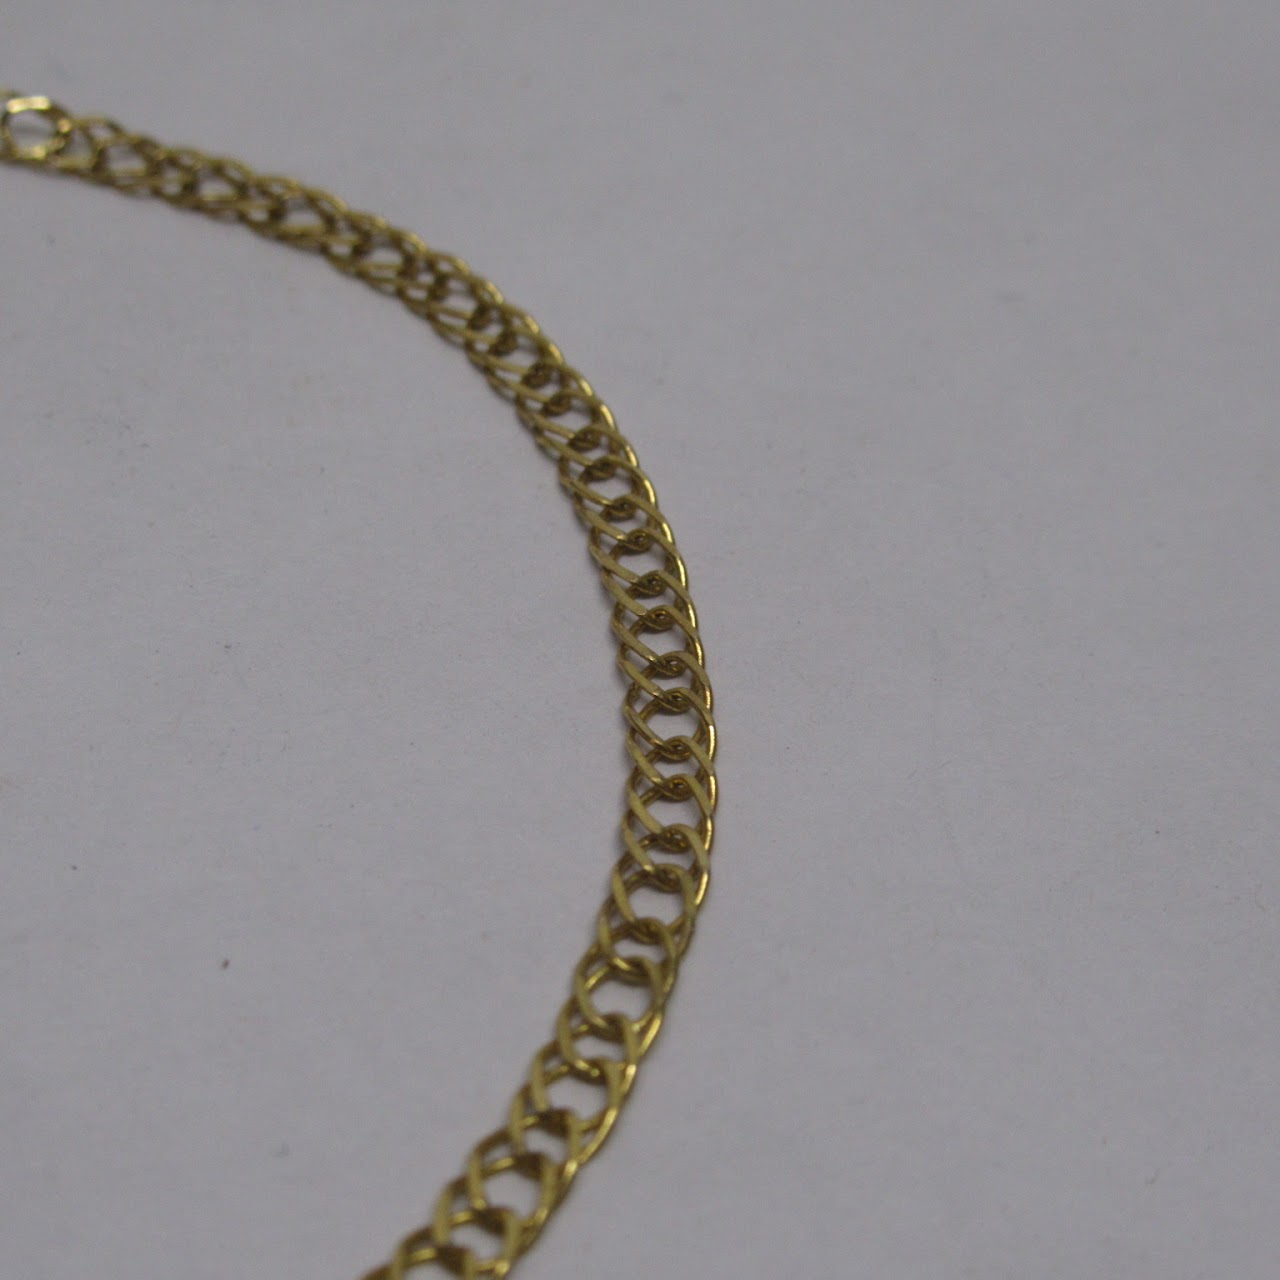 14K Gold Chain Bracelet